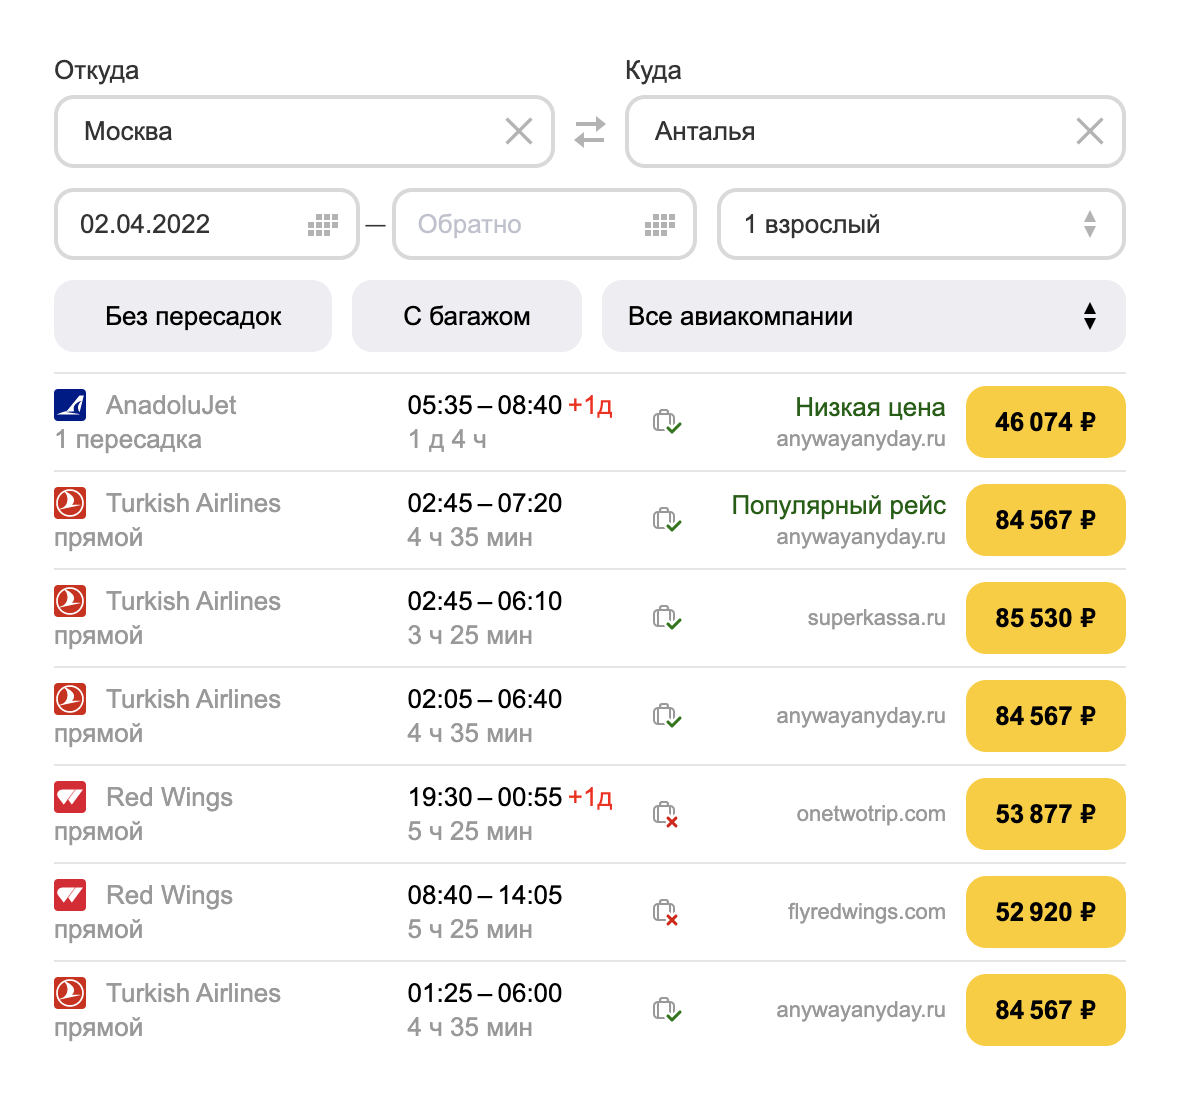 На 8 апреля 2022 года самый дешевый билет стоит 28 тысяч рублей, лететь придется 5 часов, а прибытие — ночью. Быстрые ночные рейсы с прибытием утром стоят дороже 85 тысяч рублей за человека